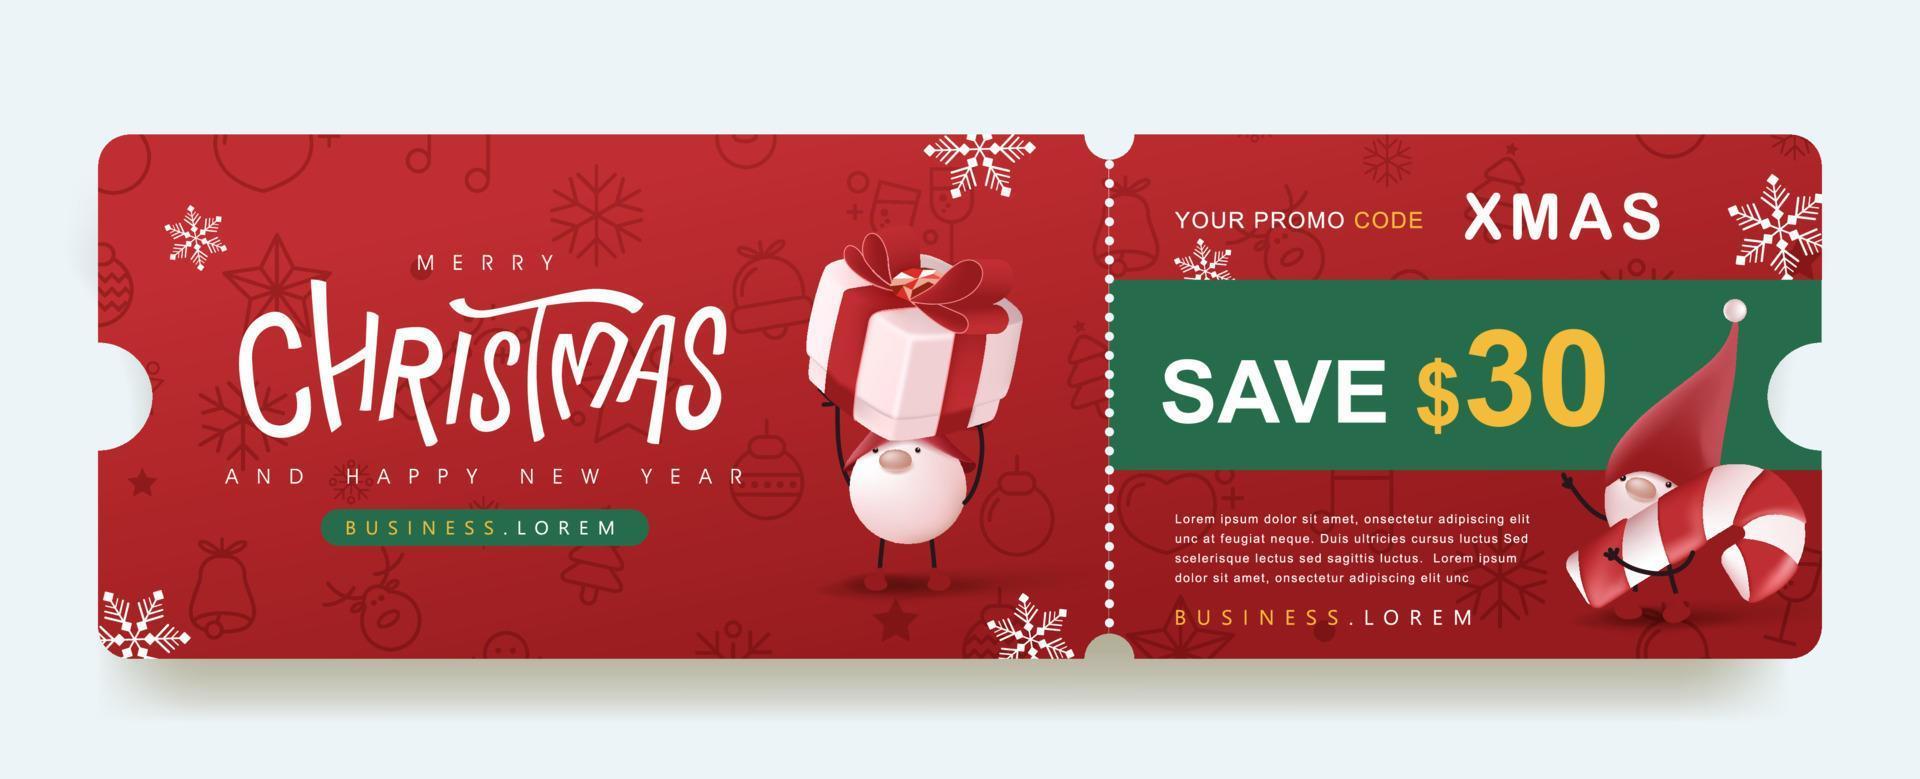 banner de cupón de promoción de regalo de feliz navidad con lindo gnomo y decoración festiva vector